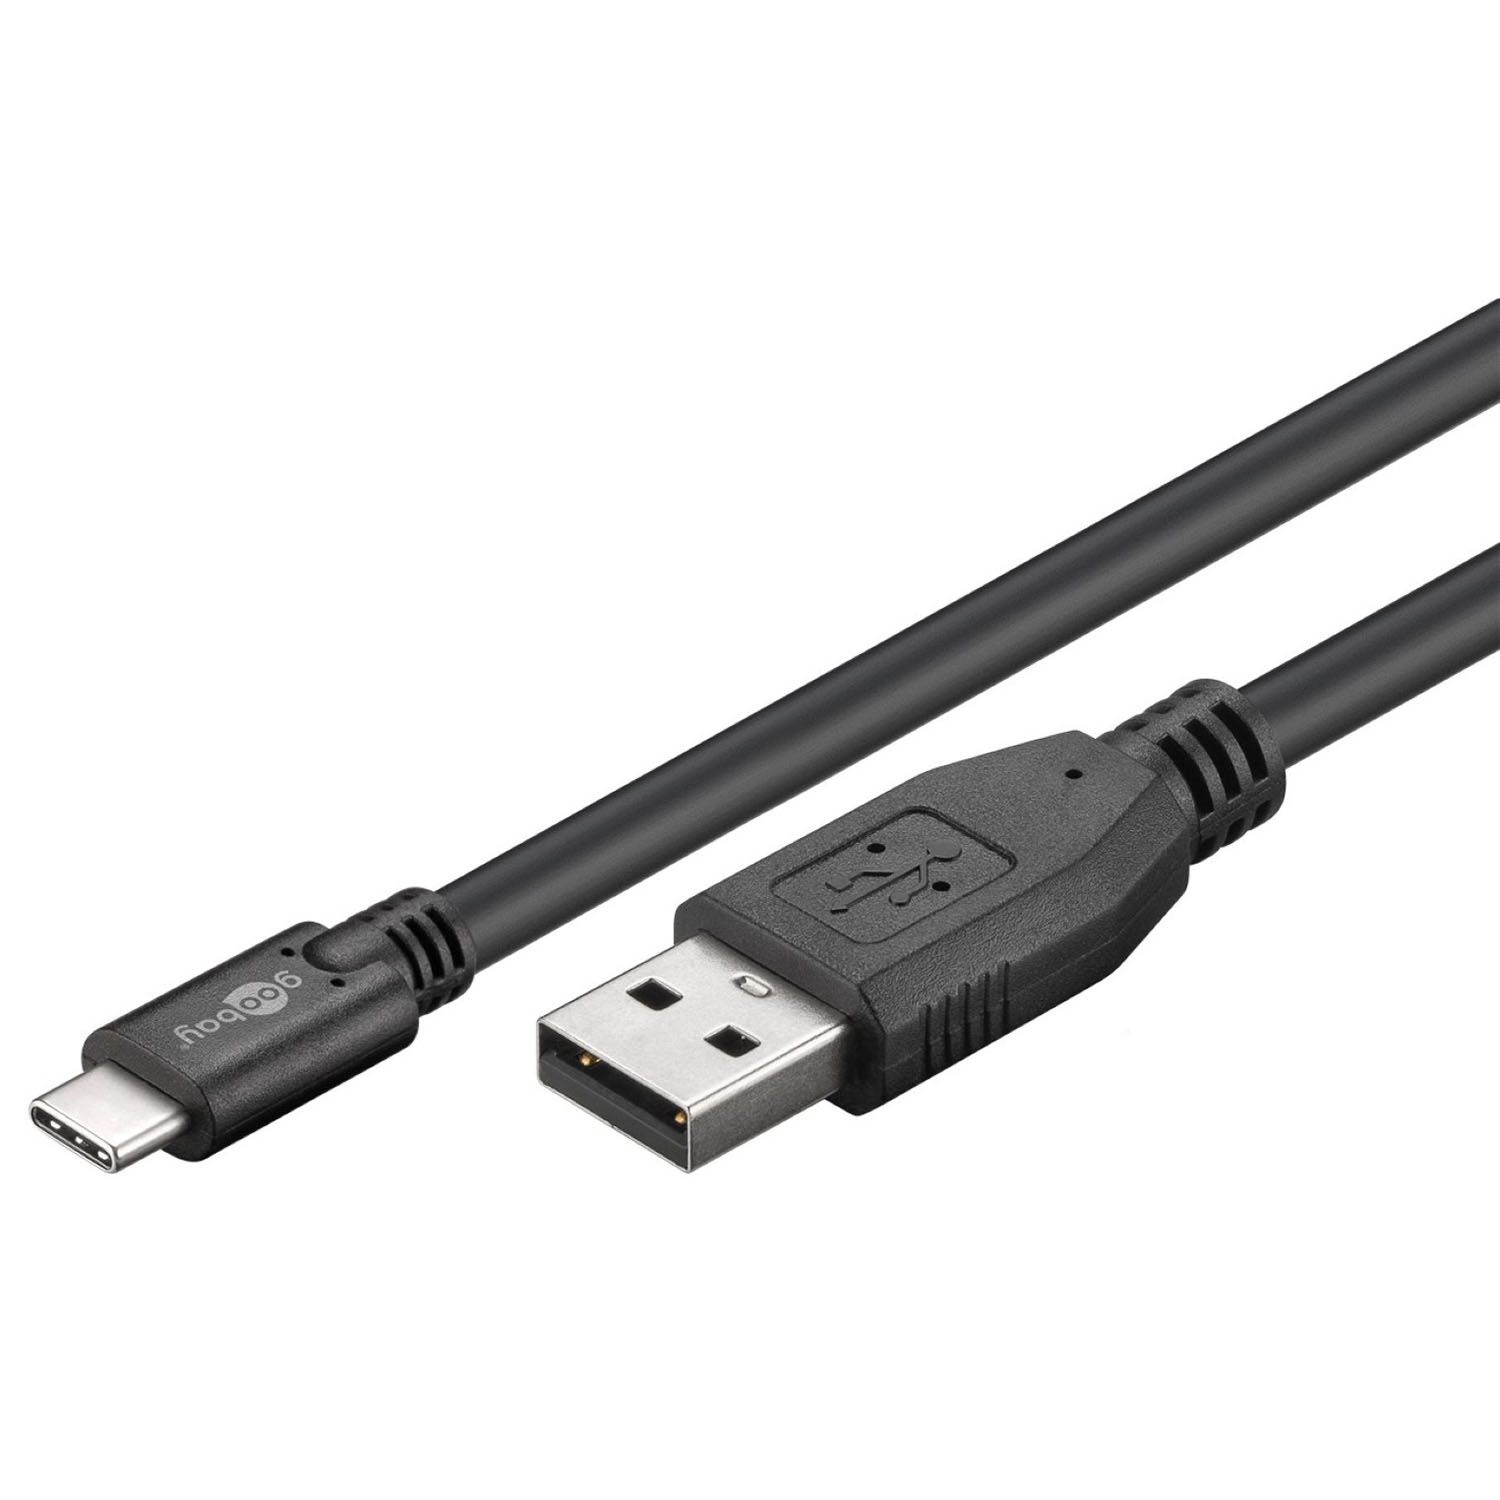 GOOBAY 55468 USB-Daten- & Ladekabel